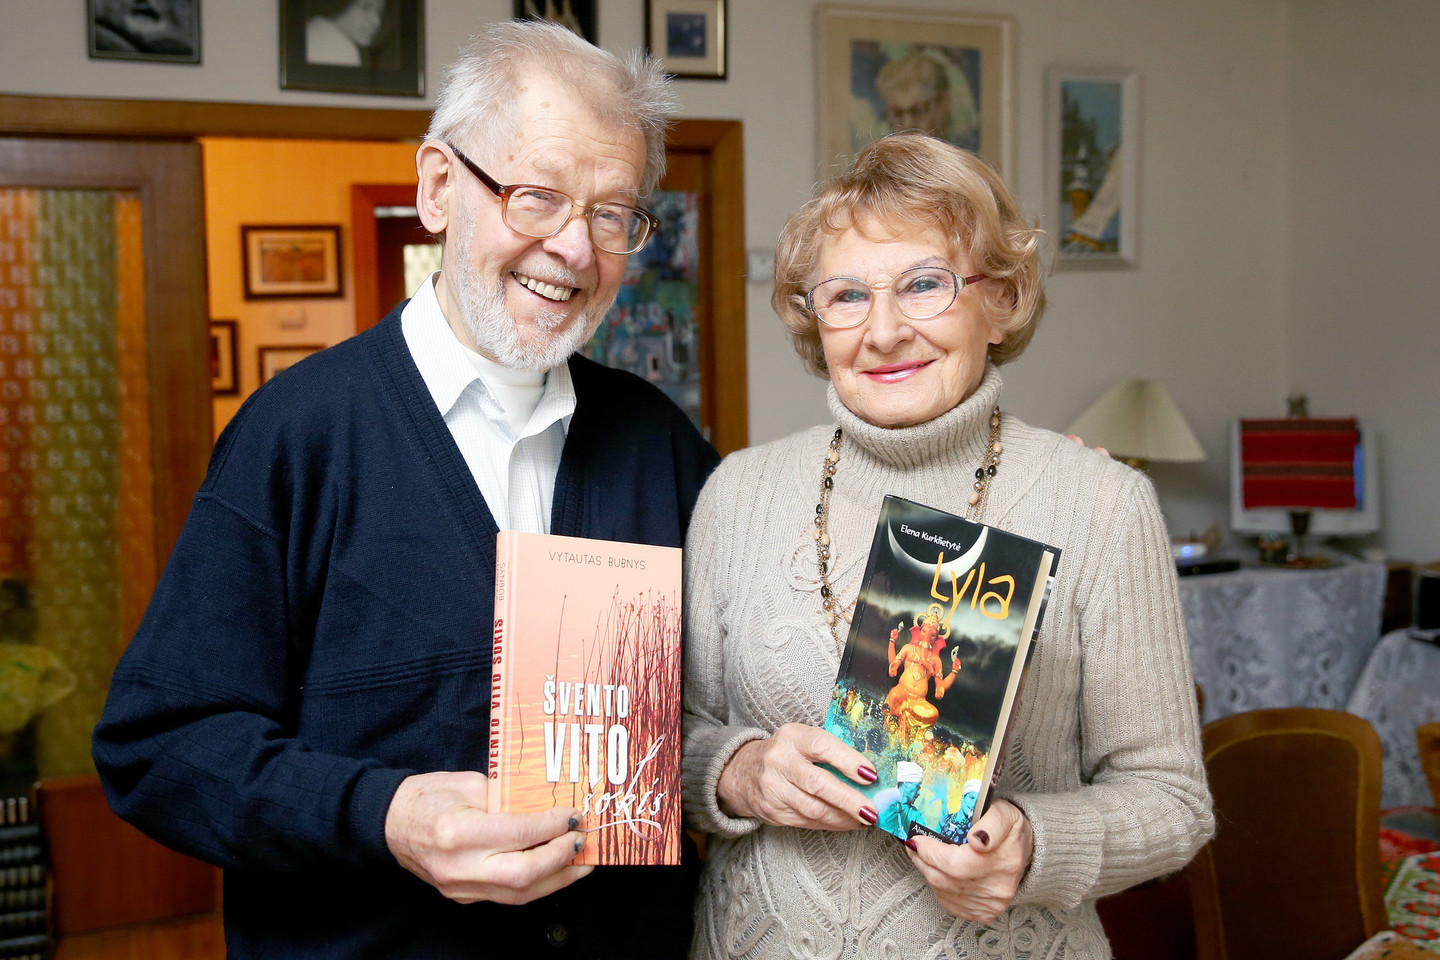 Rašytojų pora Elena Kurklietytė ir Vytautas Bubnys jaučiasi laimingi knygas rašydami tuose pačiuose namuose<br>R.Danisevičiaus nuotr.